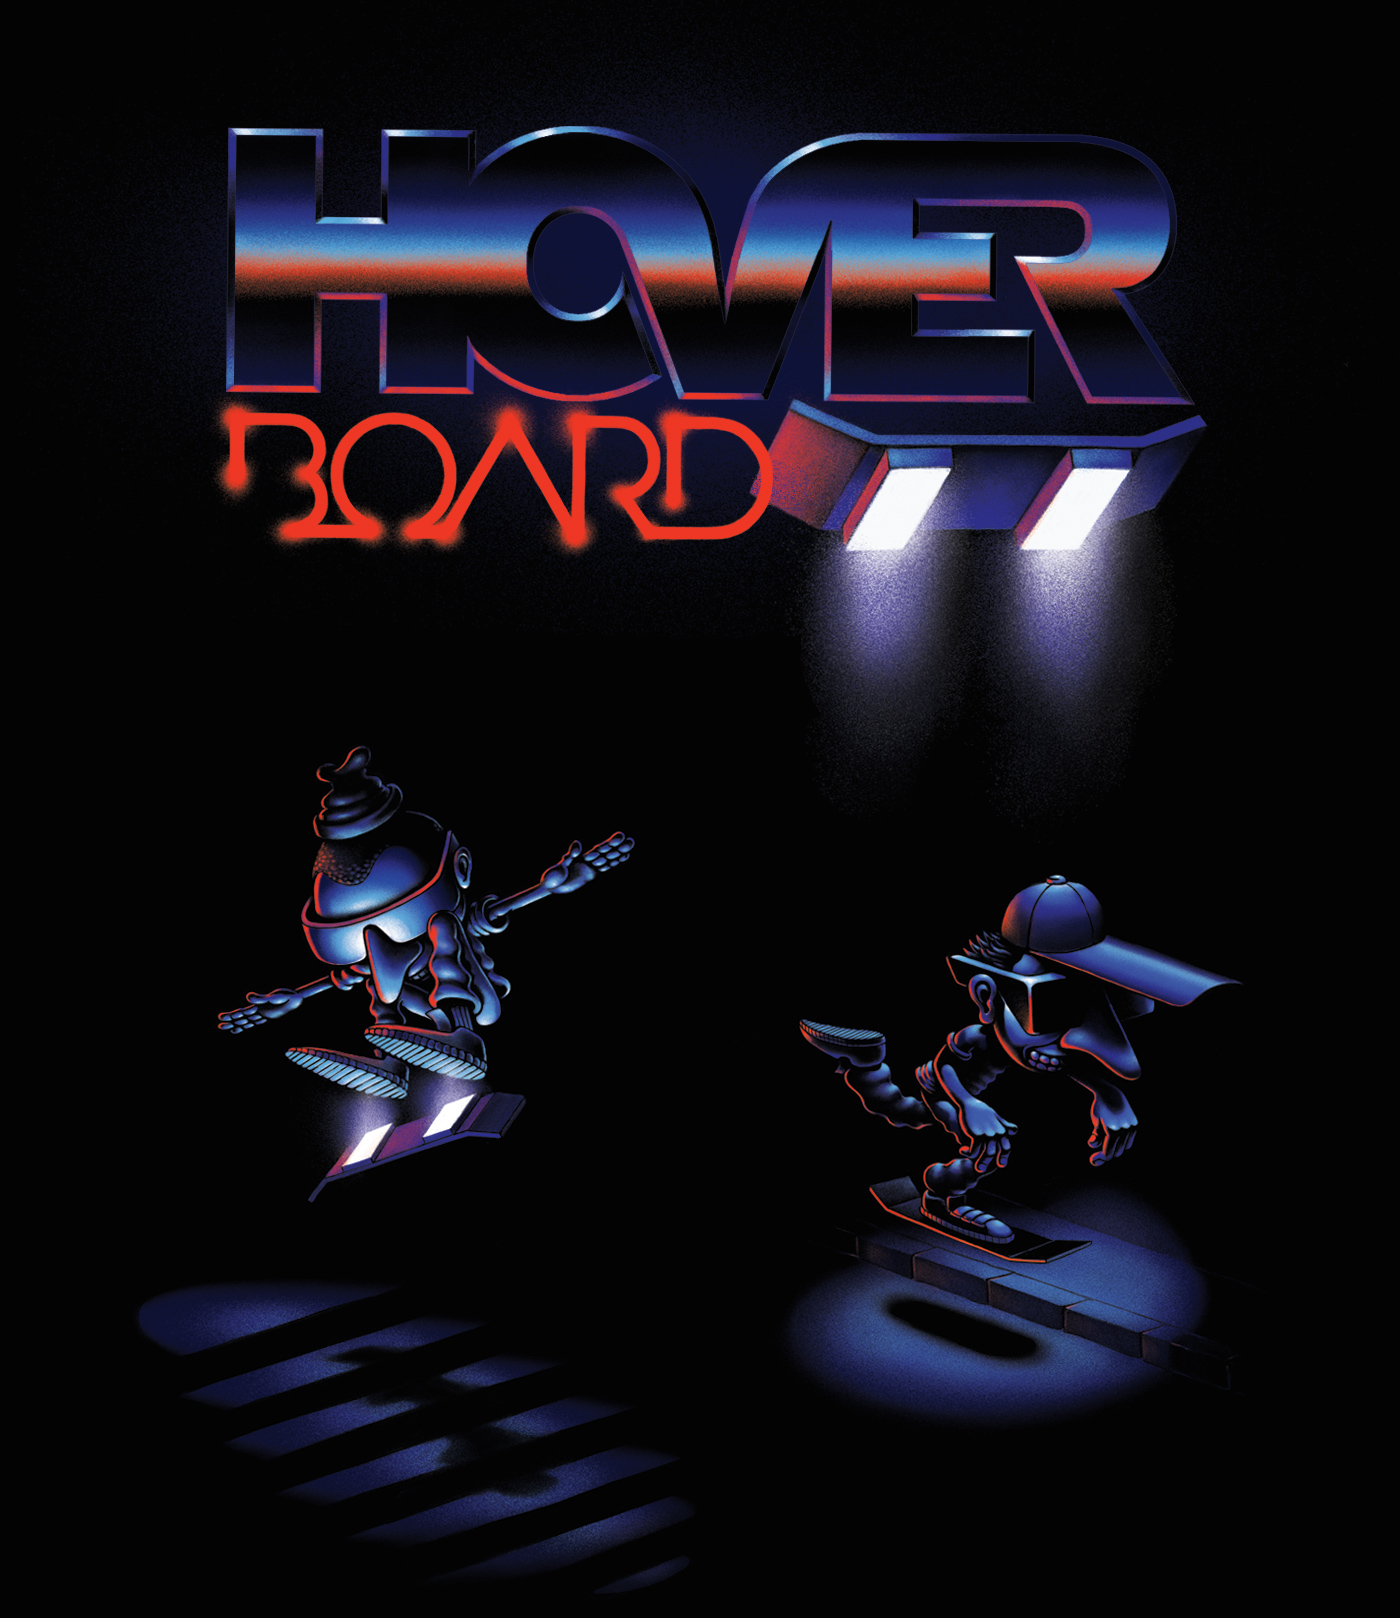 skateboard hoverboard 80s retrofuturistic airbrush grain neon lettering futuristic Retro